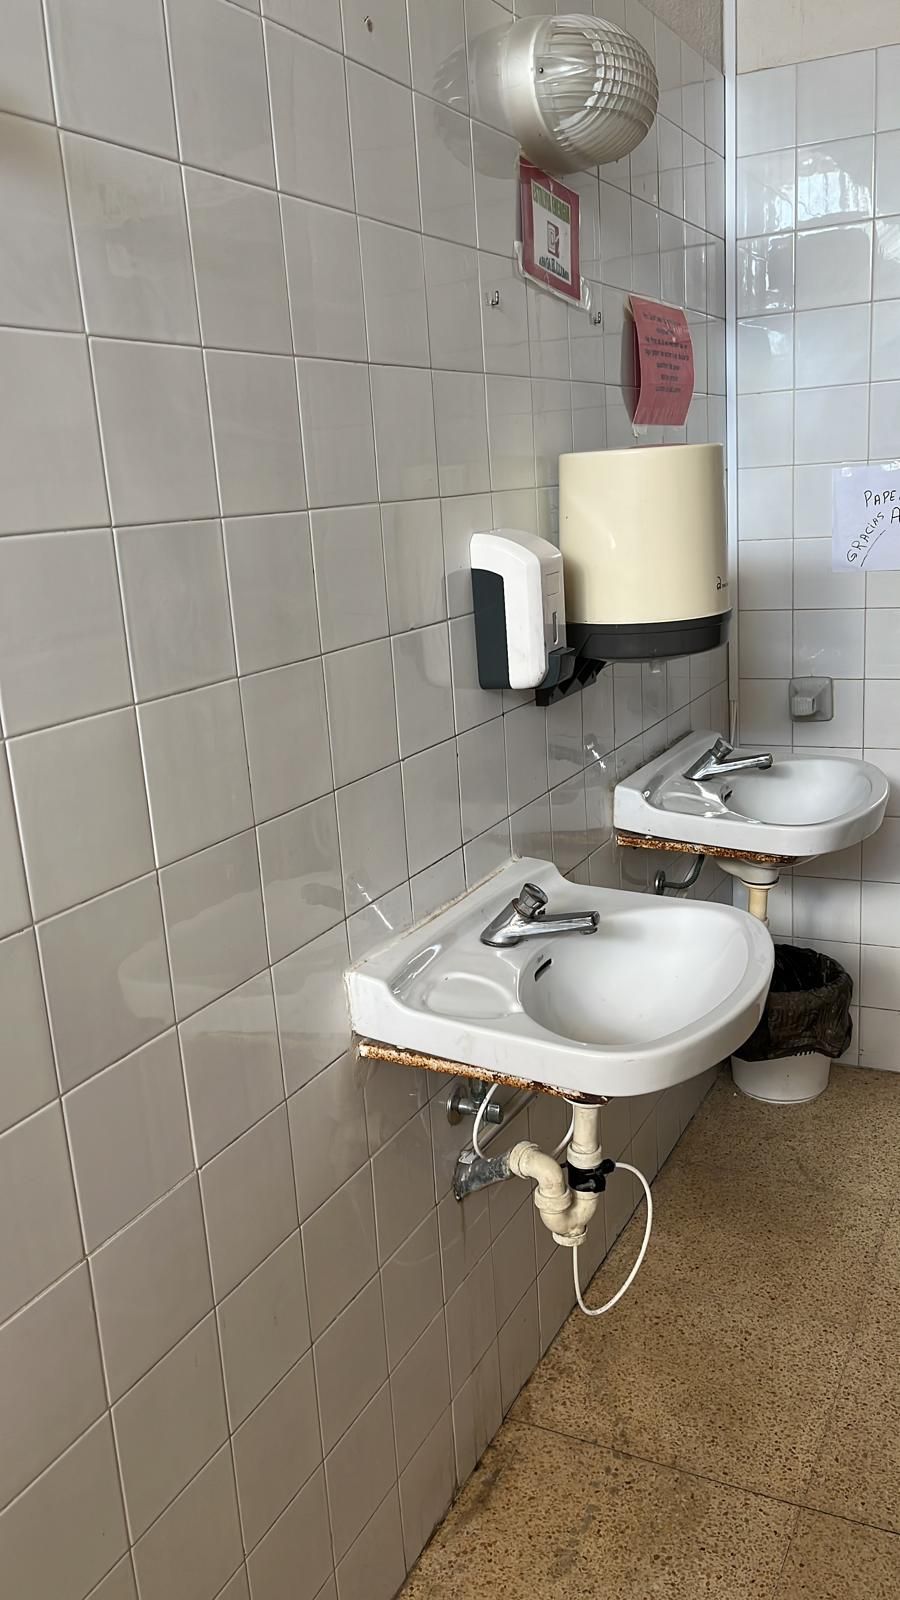 Los baños del CEIP Eleonor Bosch siguen siendo los mismos que cuando se inauguró